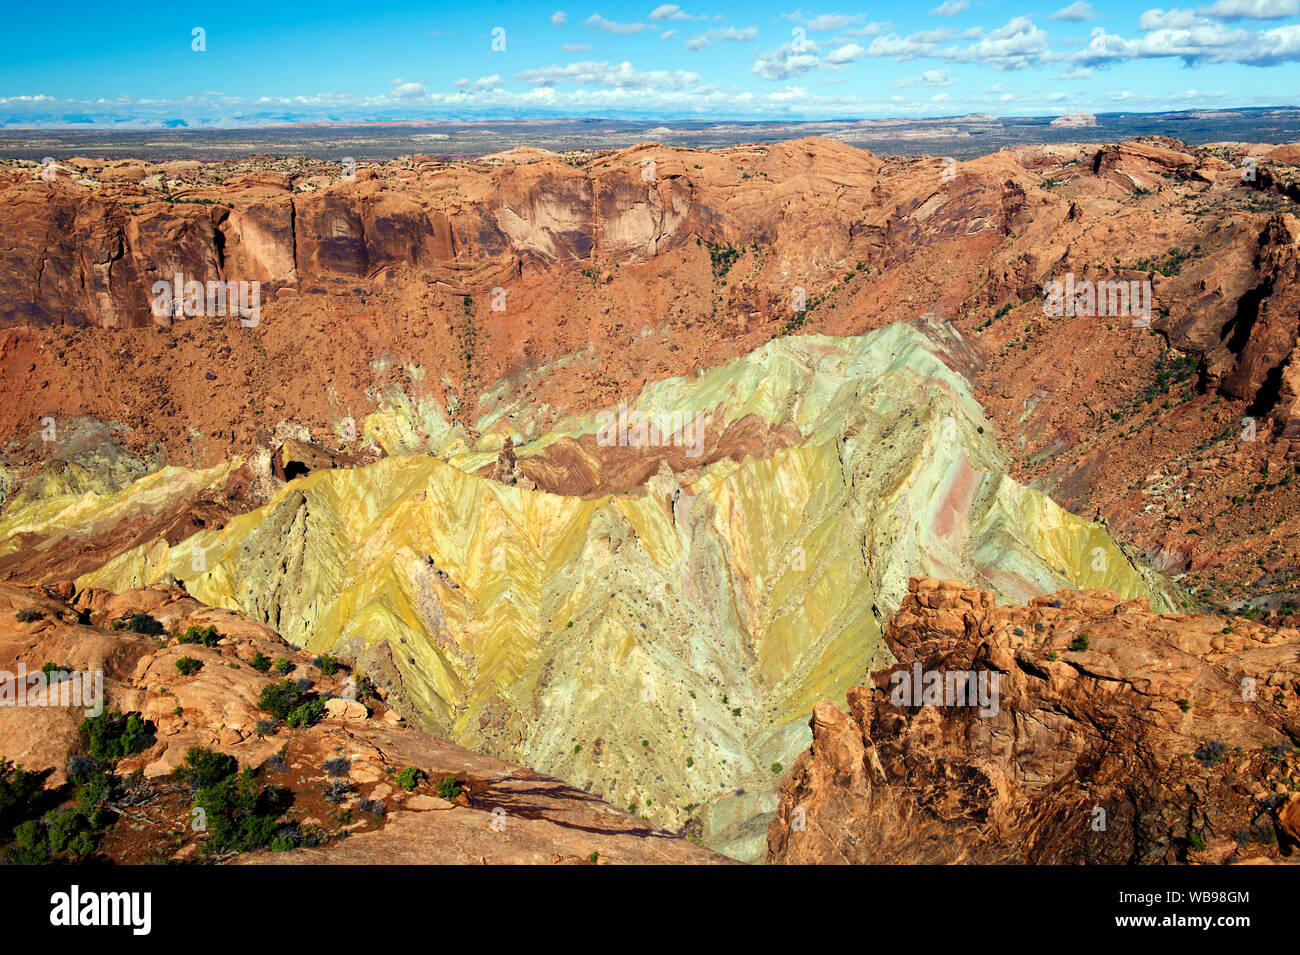 Les formations géologiques colorées en plein bouleversement, le Dôme érodé fond d'un cratère d'impact, Canyonlands National Park, Utah, USA. Banque D'Images